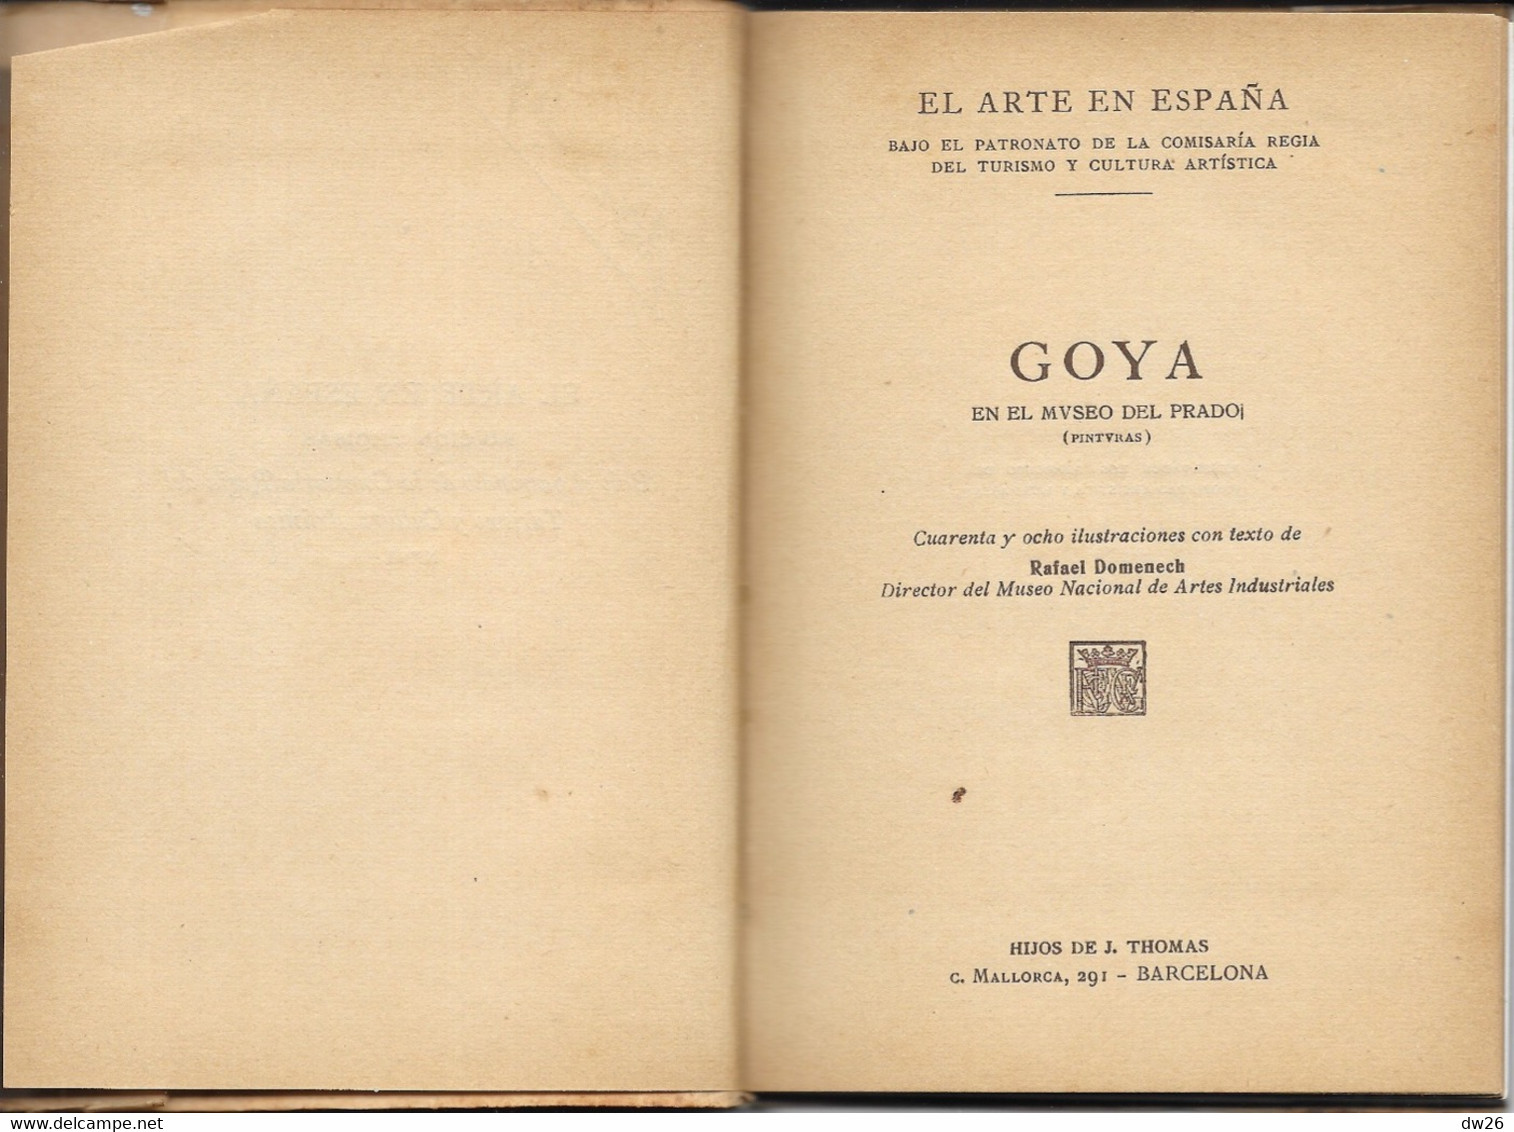 Livre D'Art Broché: El Arte En España, Goya En El Museo Del Pardo - Edition Thomas N° 14 - Cultura